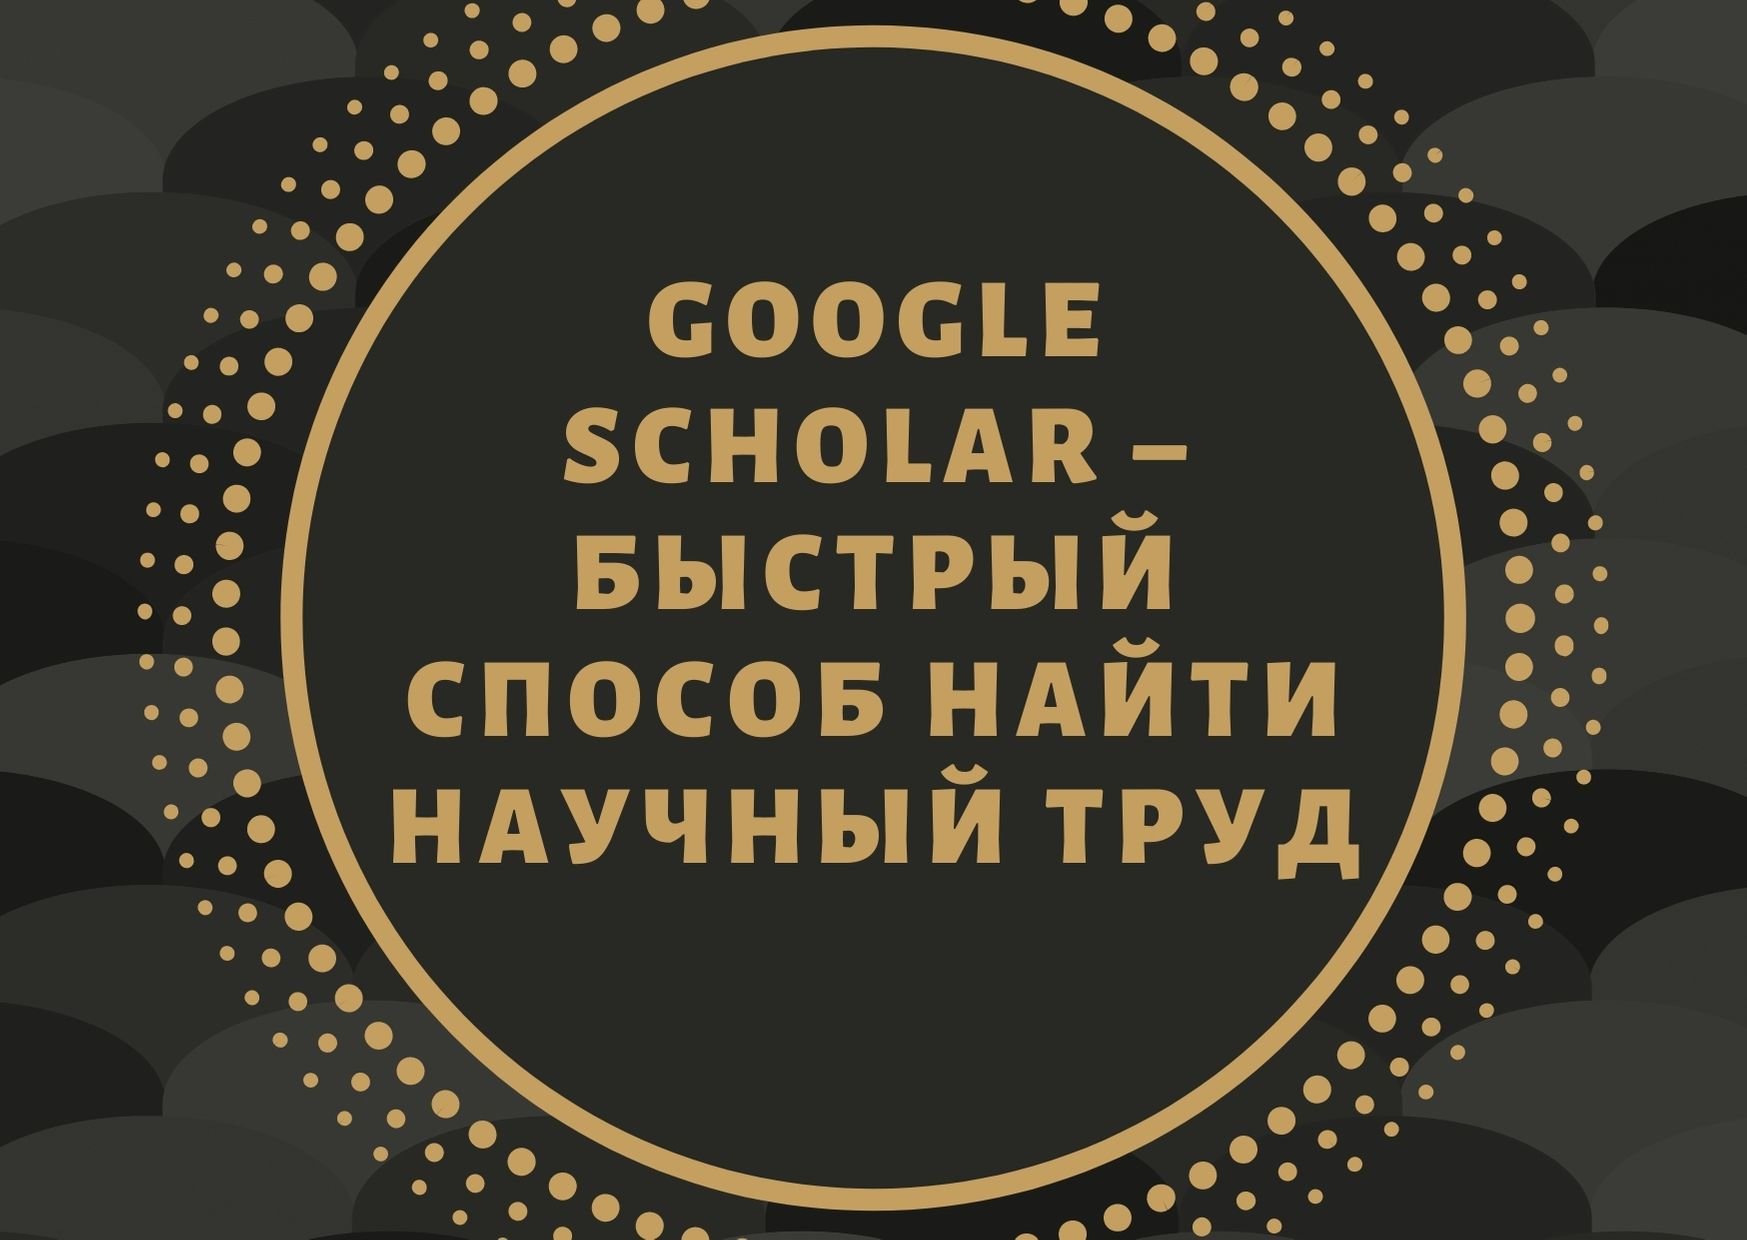 Google Scholar – быстрый способ найти научный труд